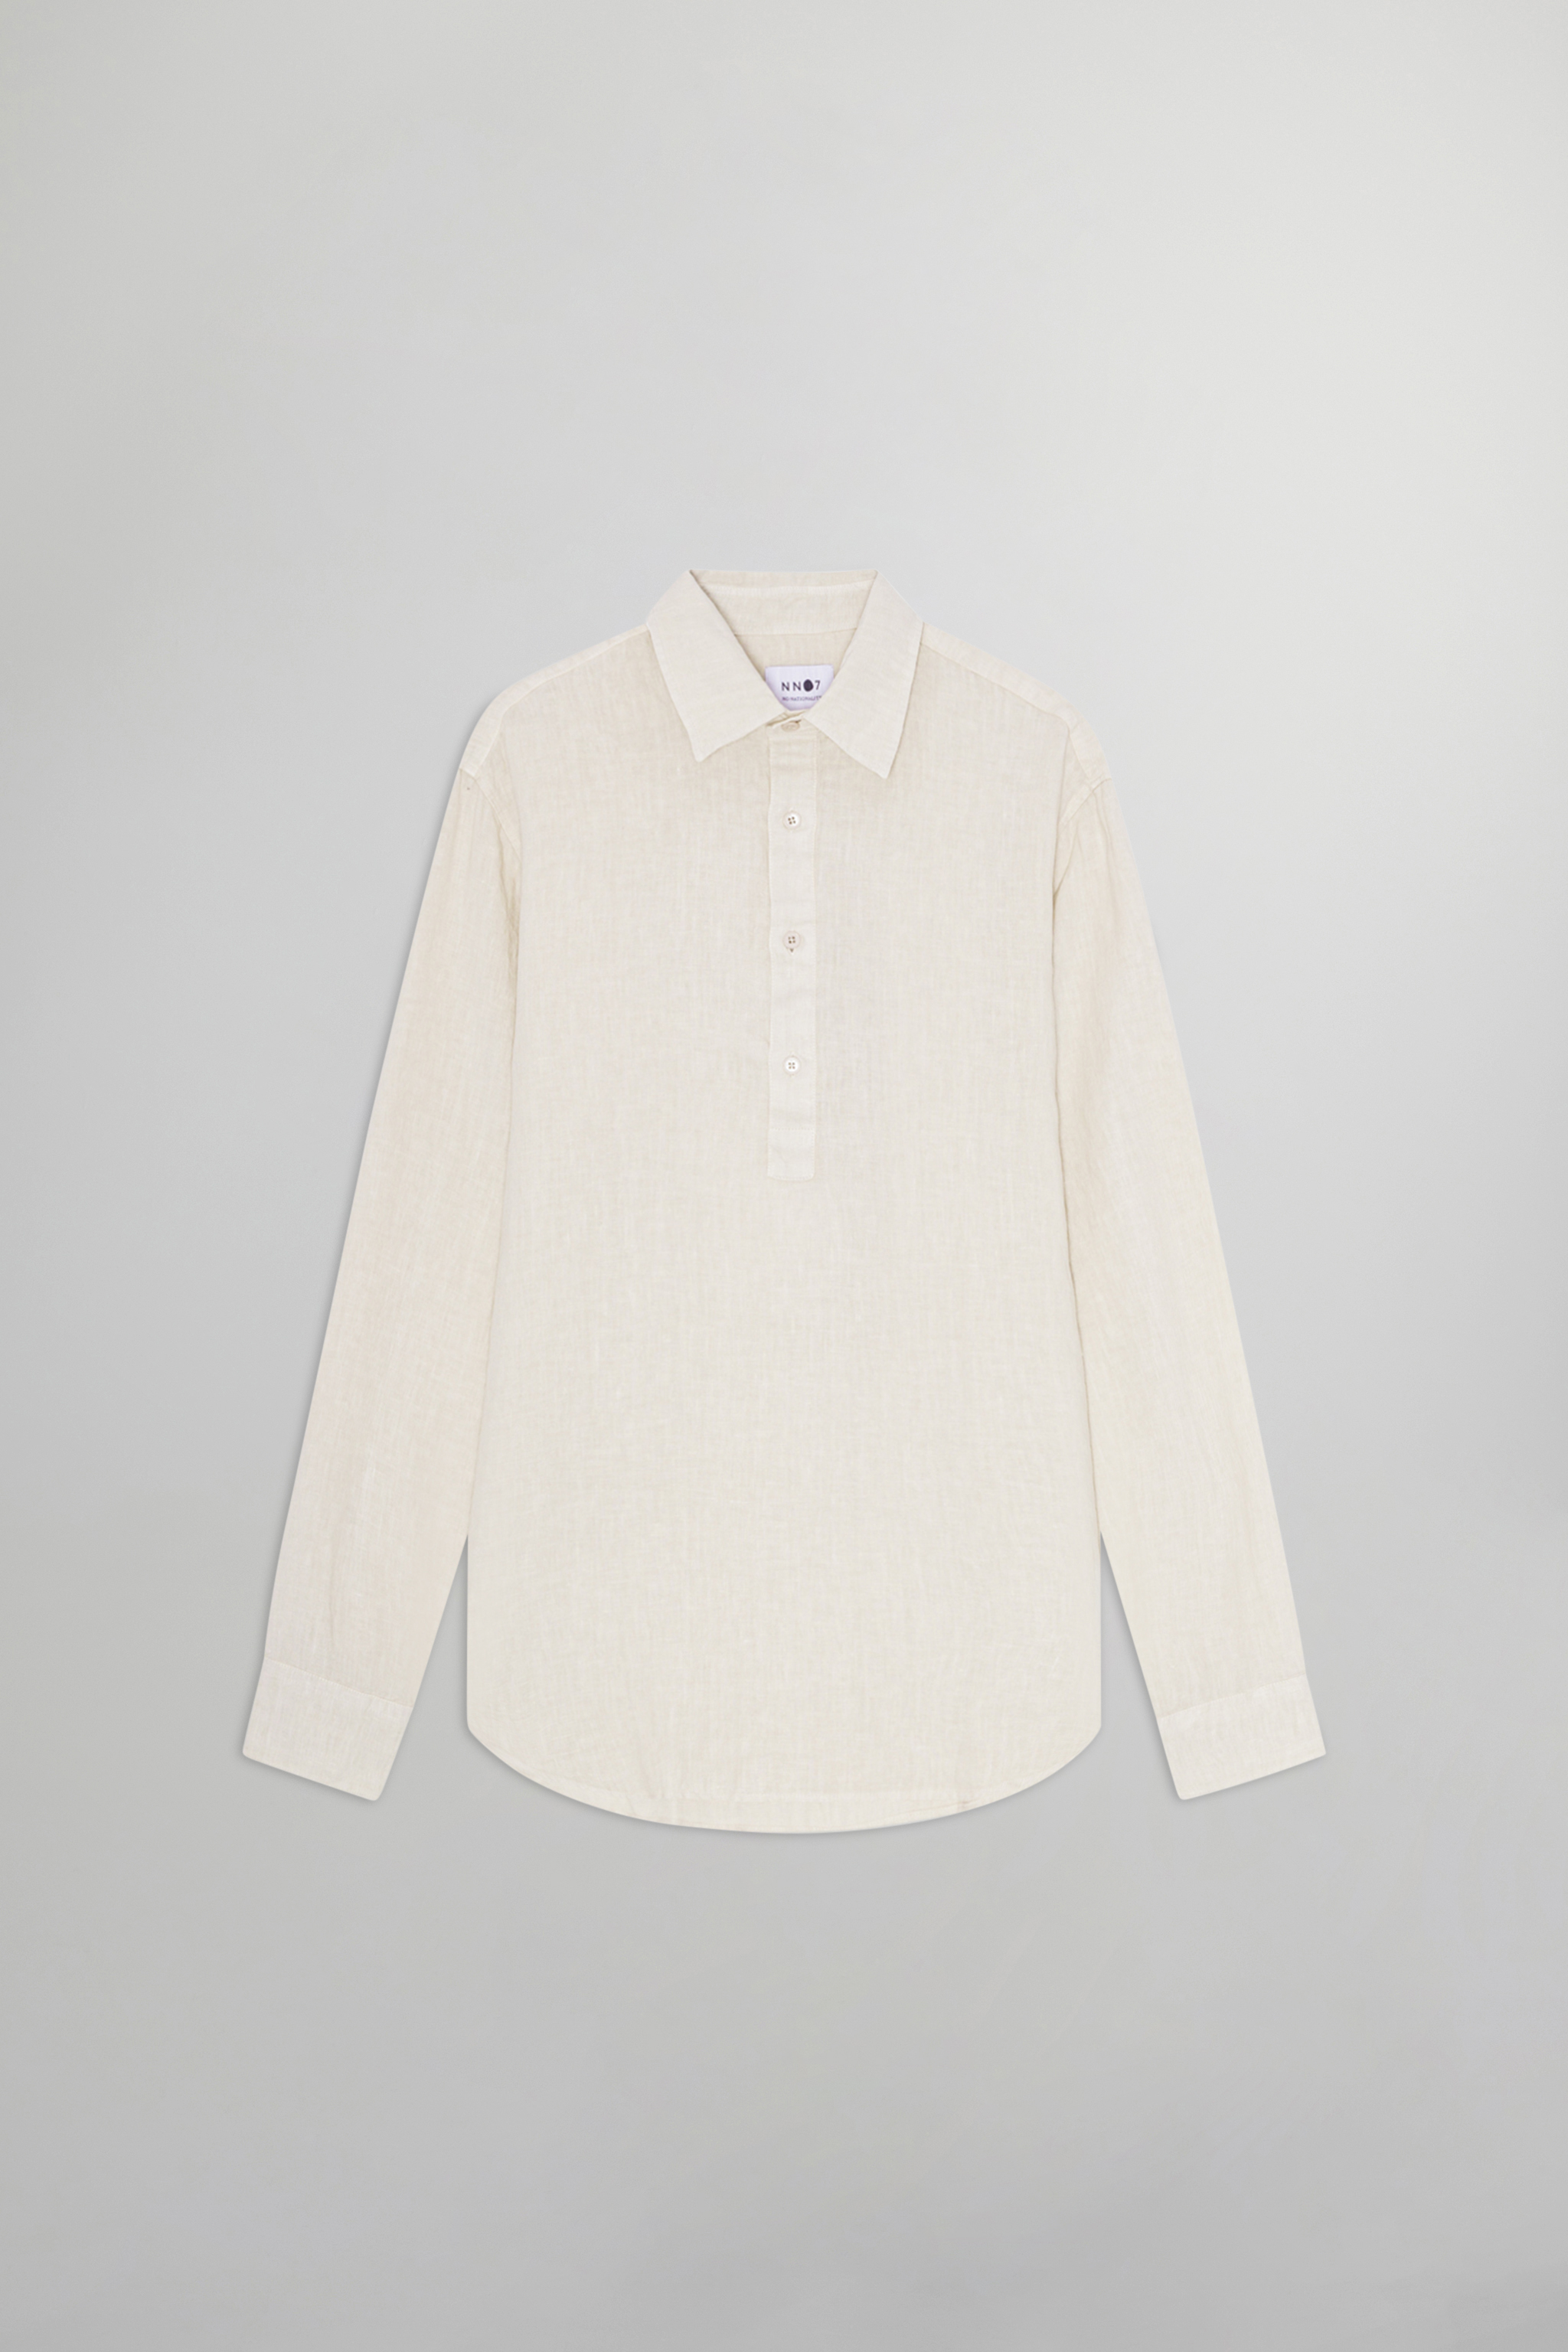 Sune 5706 men's shirt - White - Buy online at NN.07®